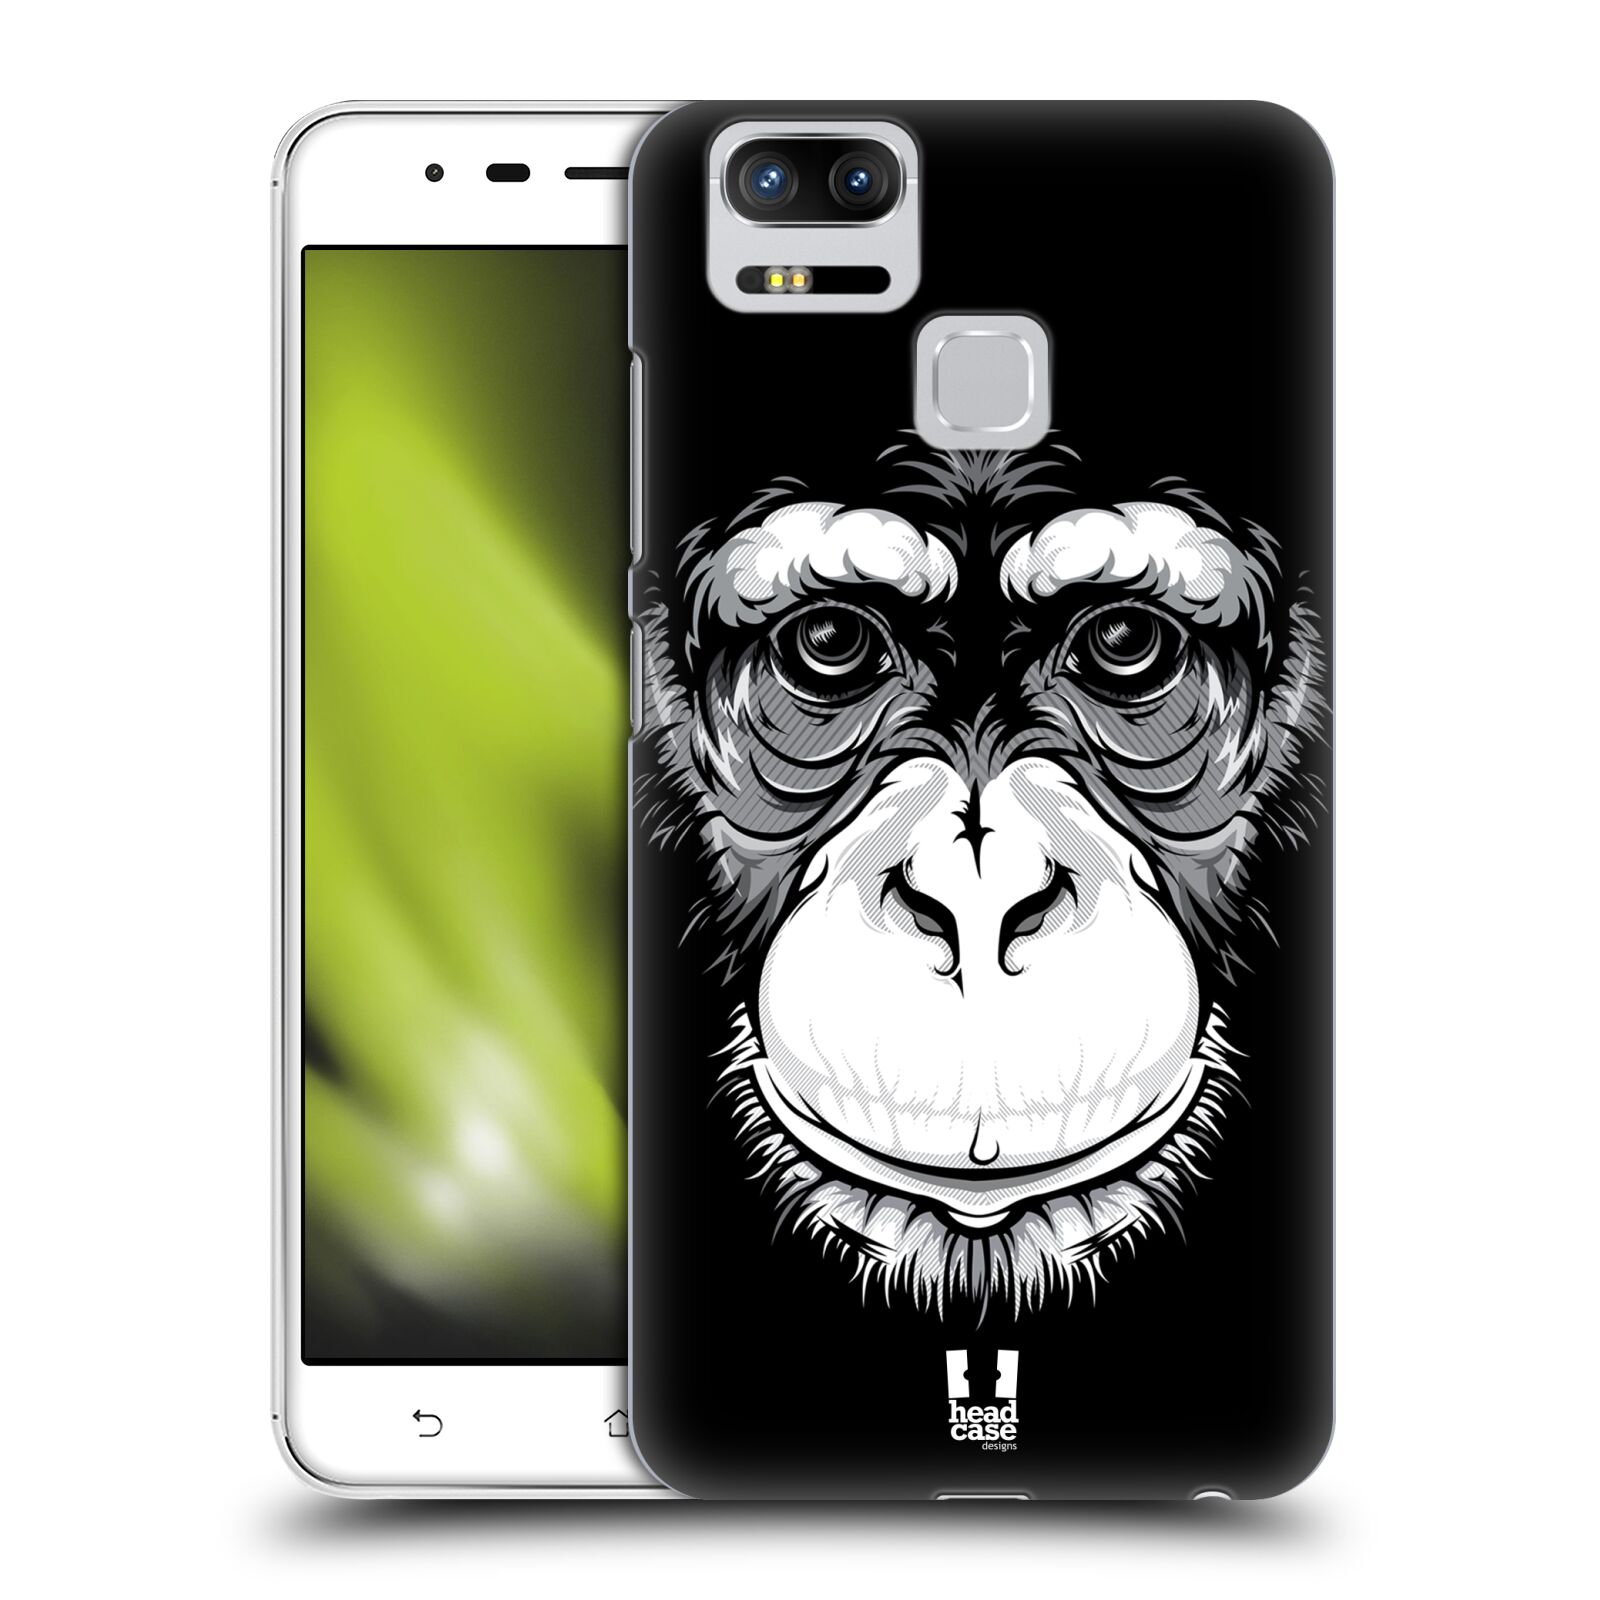 HEAD CASE plastový obal na mobil Asus Zenfone 3 Zoom ZE553KL vzor Zvíře kreslená tvář šimpanz